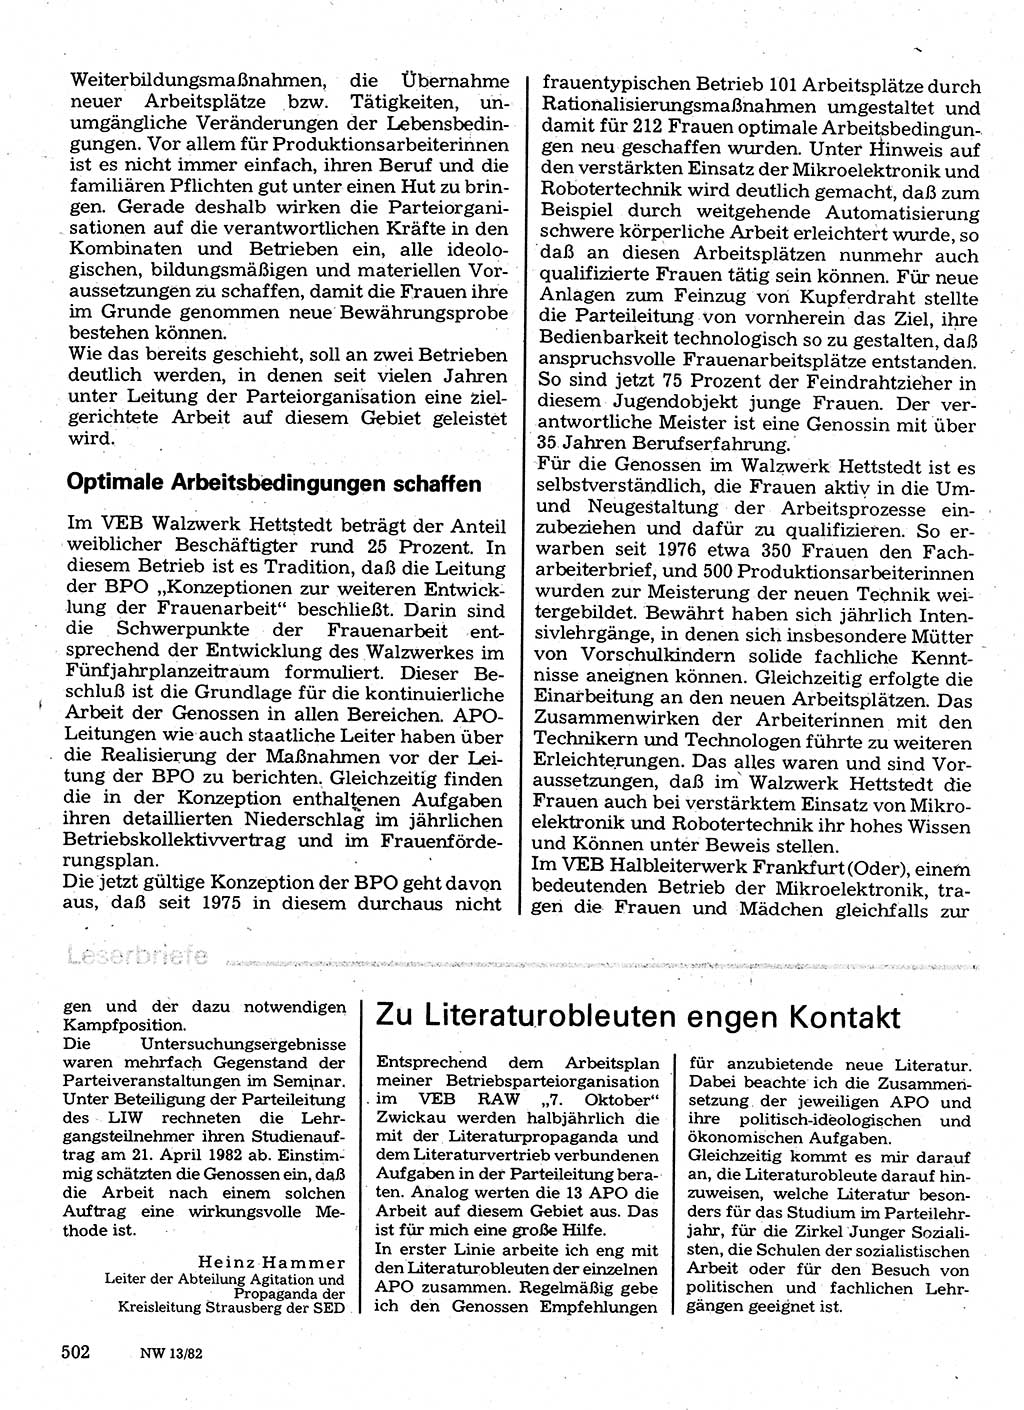 Neuer Weg (NW), Organ des Zentralkomitees (ZK) der SED (Sozialistische Einheitspartei Deutschlands) für Fragen des Parteilebens, 37. Jahrgang [Deutsche Demokratische Republik (DDR)] 1982, Seite 502 (NW ZK SED DDR 1982, S. 502)